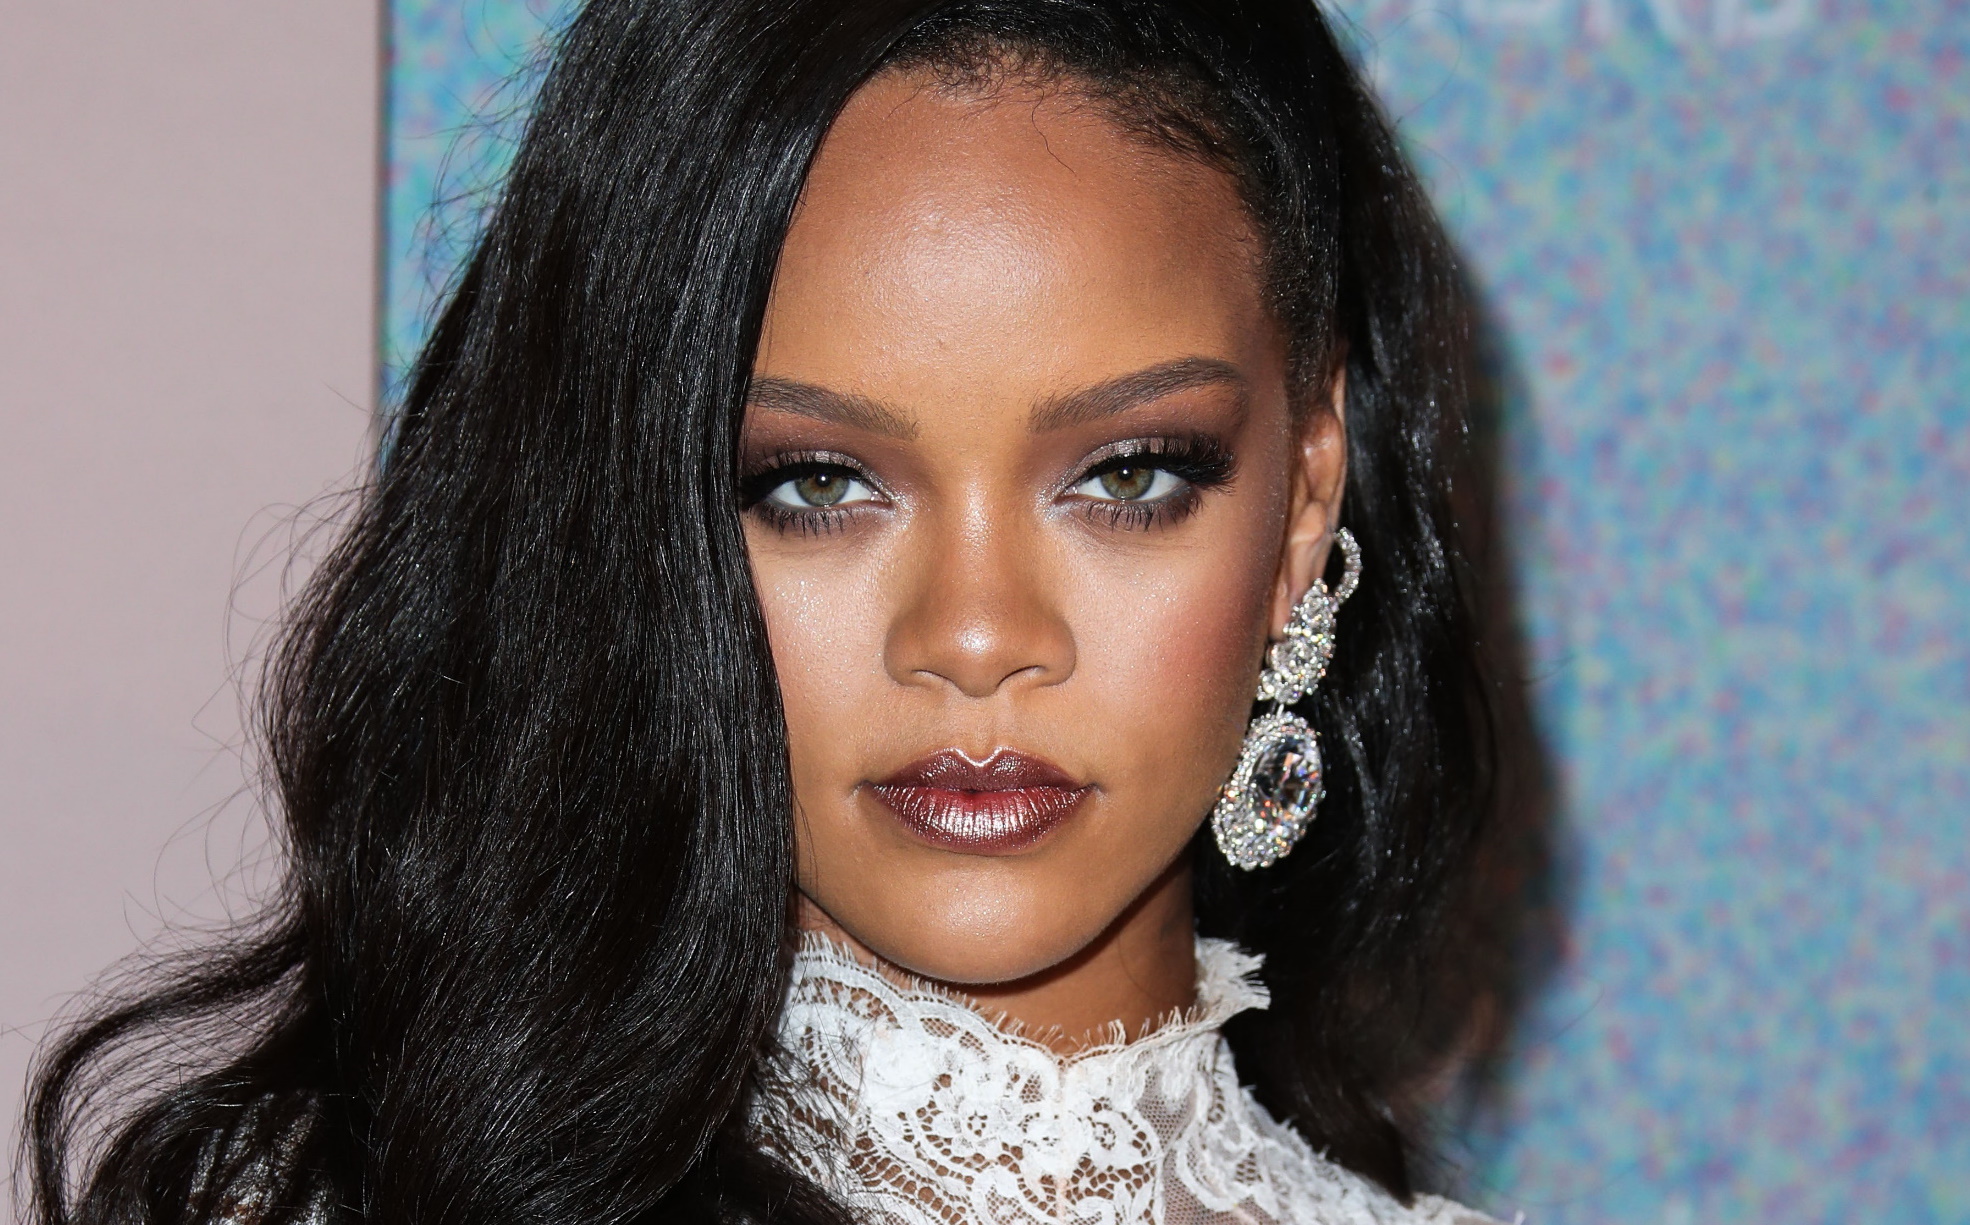 Τα Fenty Skincare, το νέο brand της Rihanna, έρχεται και ιδού τι πρέπει να ξέρεις!